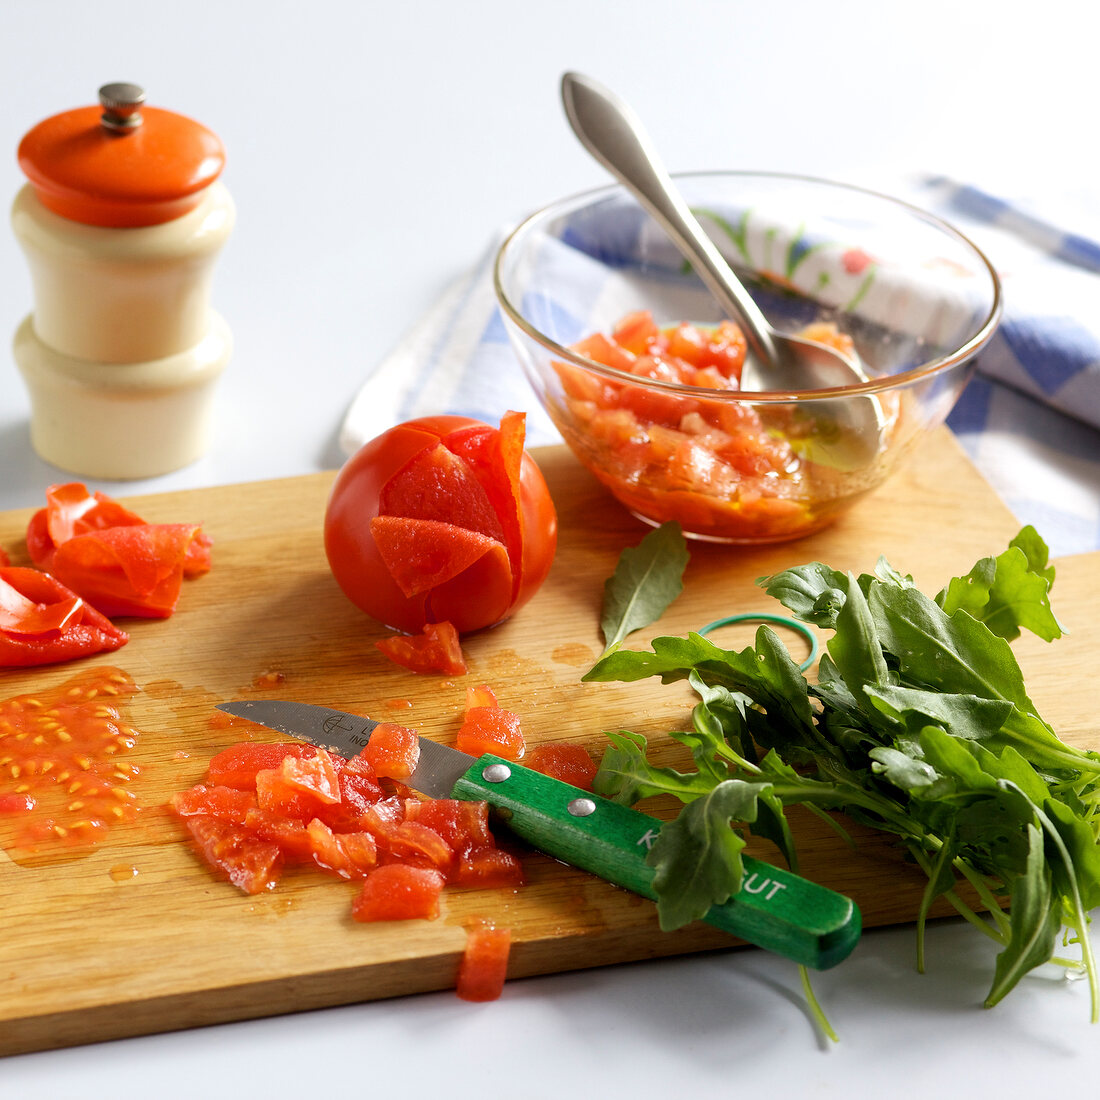 Kochkurs, Tomaten häuten und würfeln, Step 3